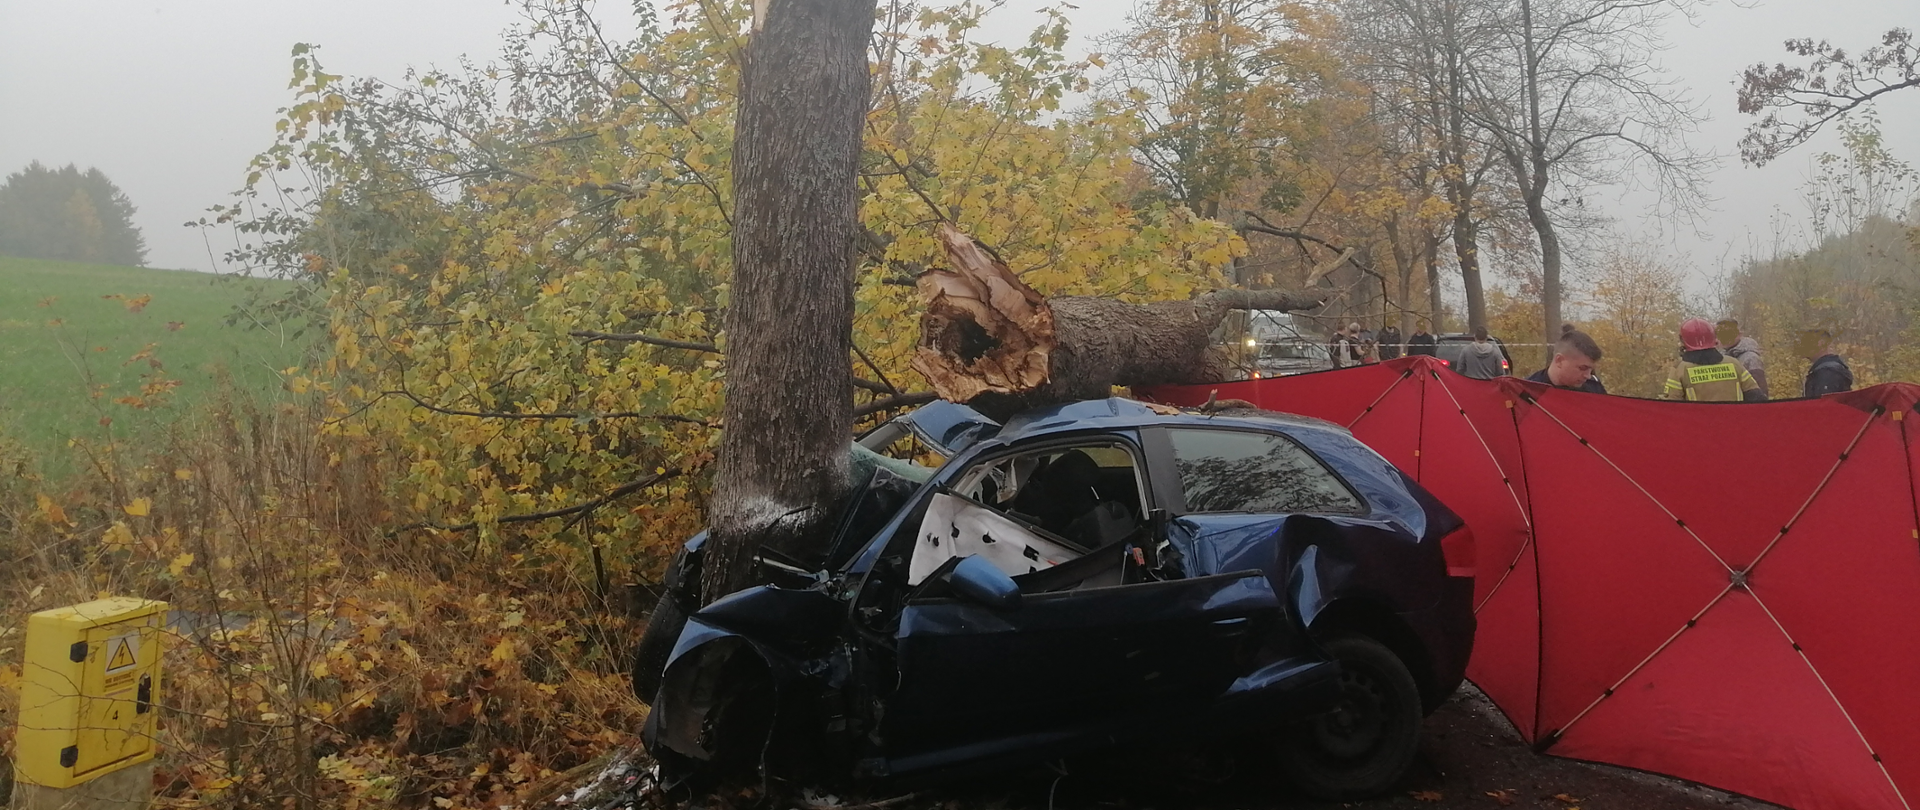 Zdjęcie przedstawia granatowe auto wbite w drzewo. Na dachu auta znajduje się połamany konar. Od strony ulicy strażak rozstawia czerwony parawan. Z lewej strony znajduje się przy polu skrzynka z gazem.